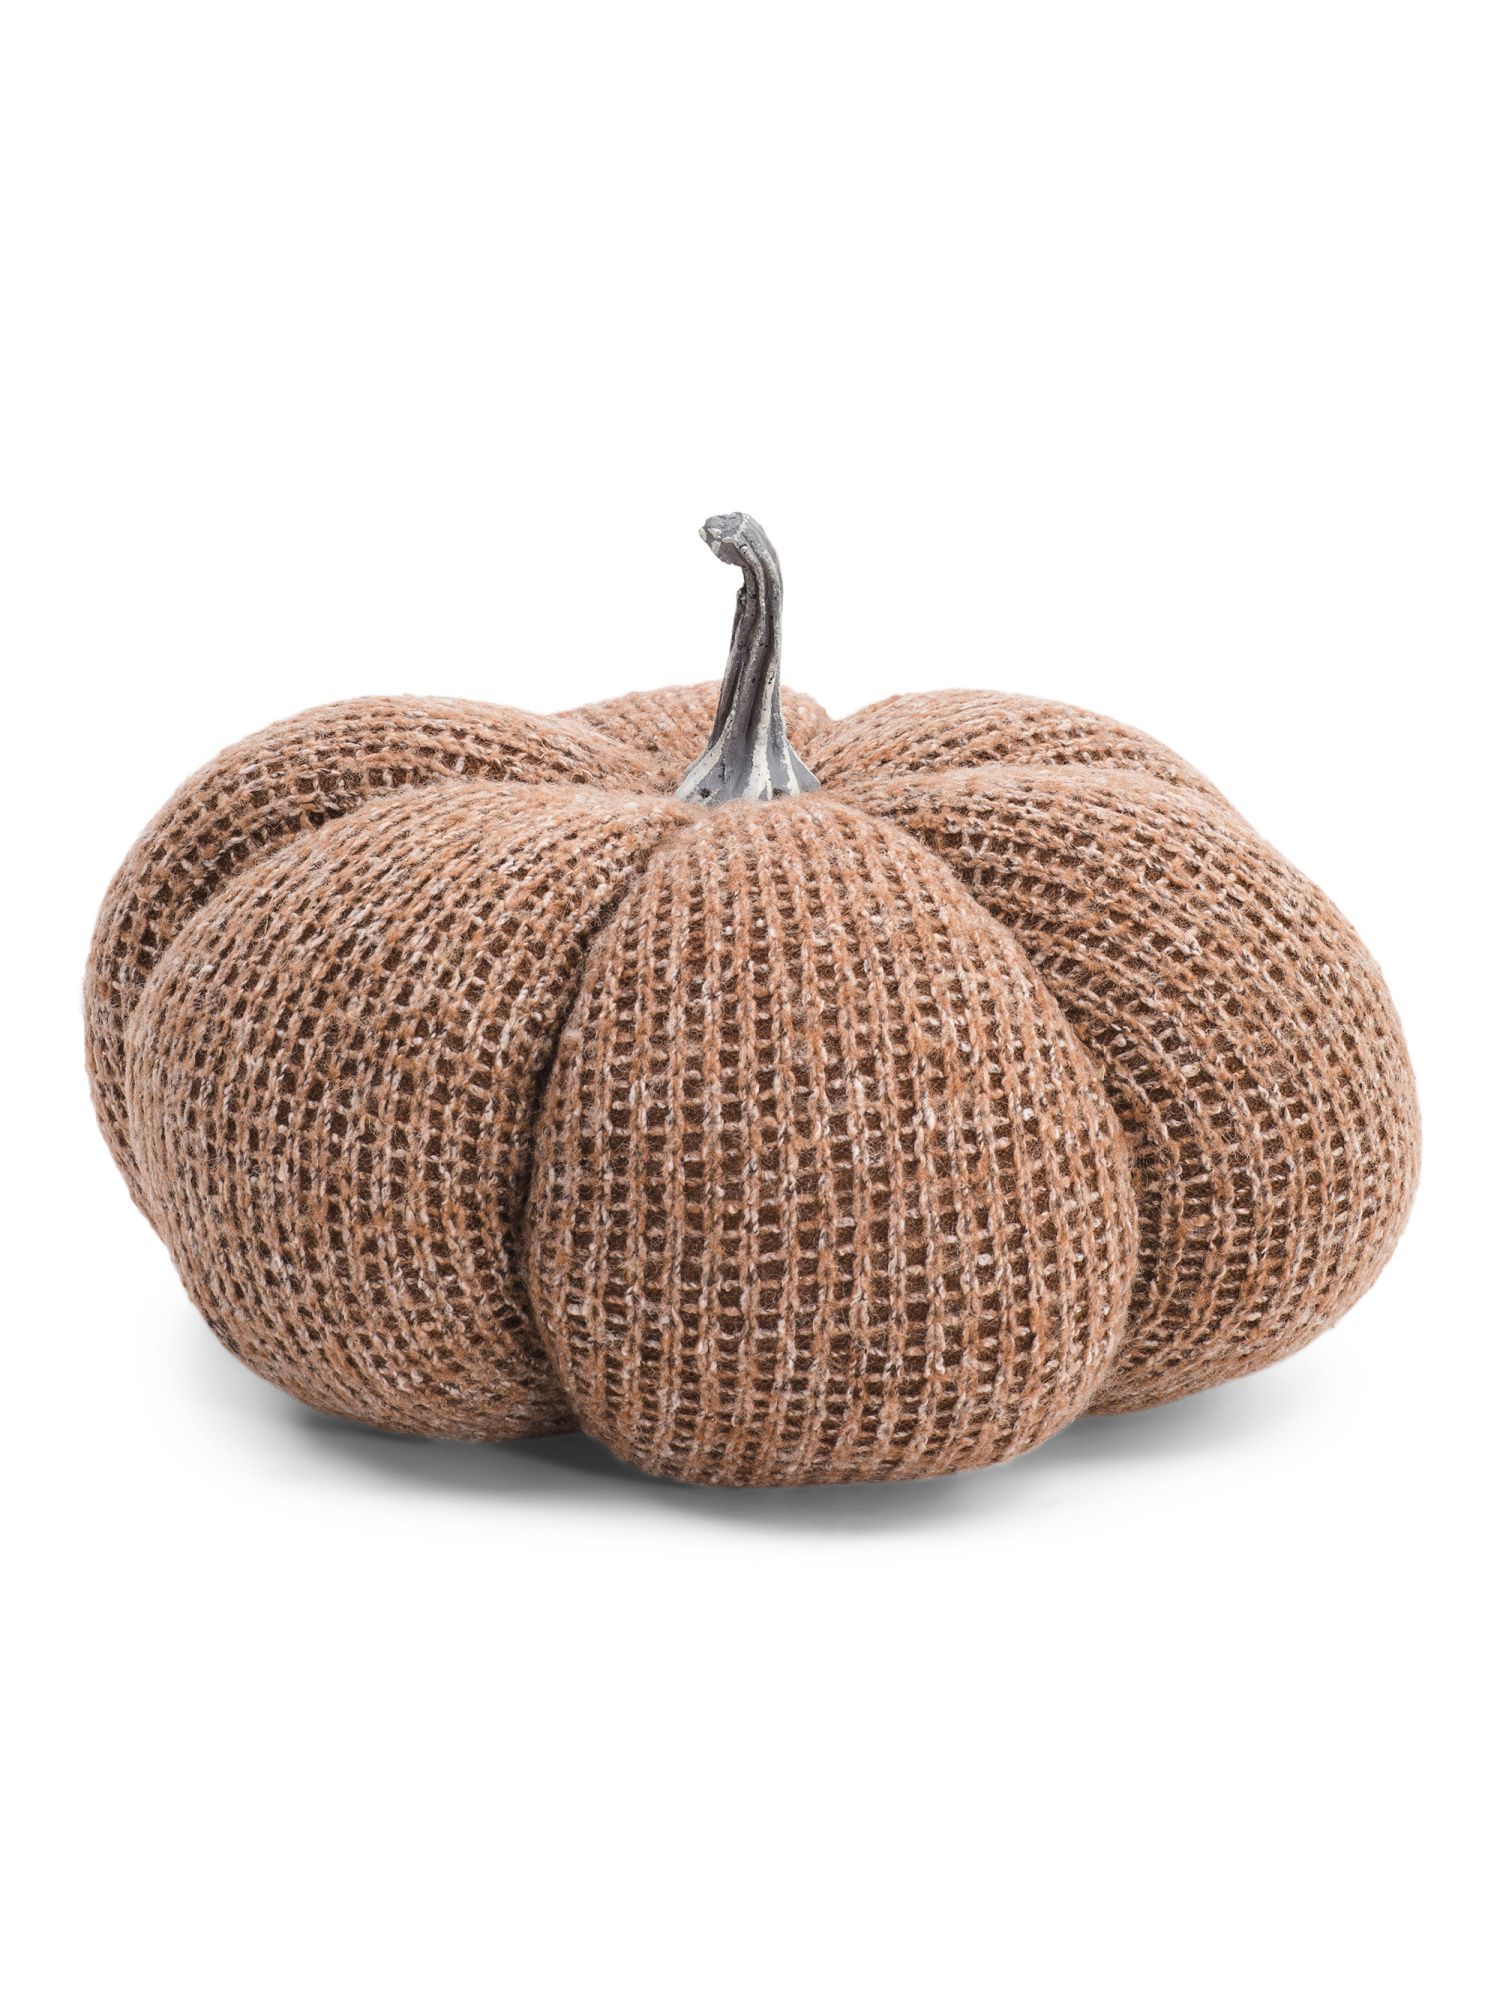 10in Knit Pumpkin | Pillows & Decor | Marshalls | Marshalls